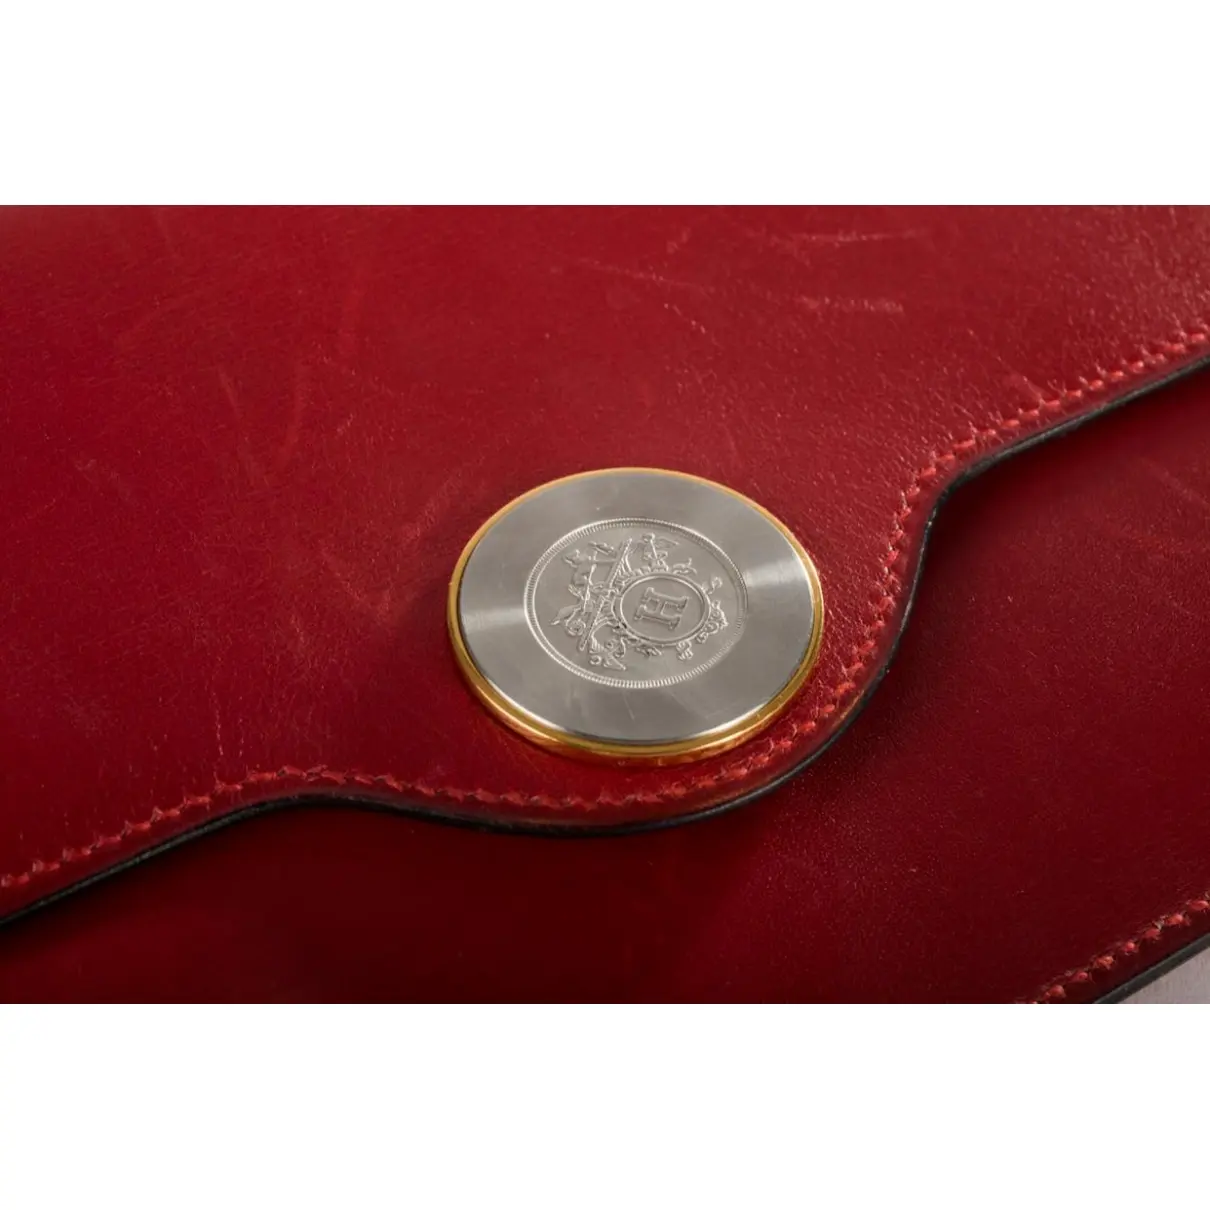 Buy Hermès Leather clutch bag online - Vintage